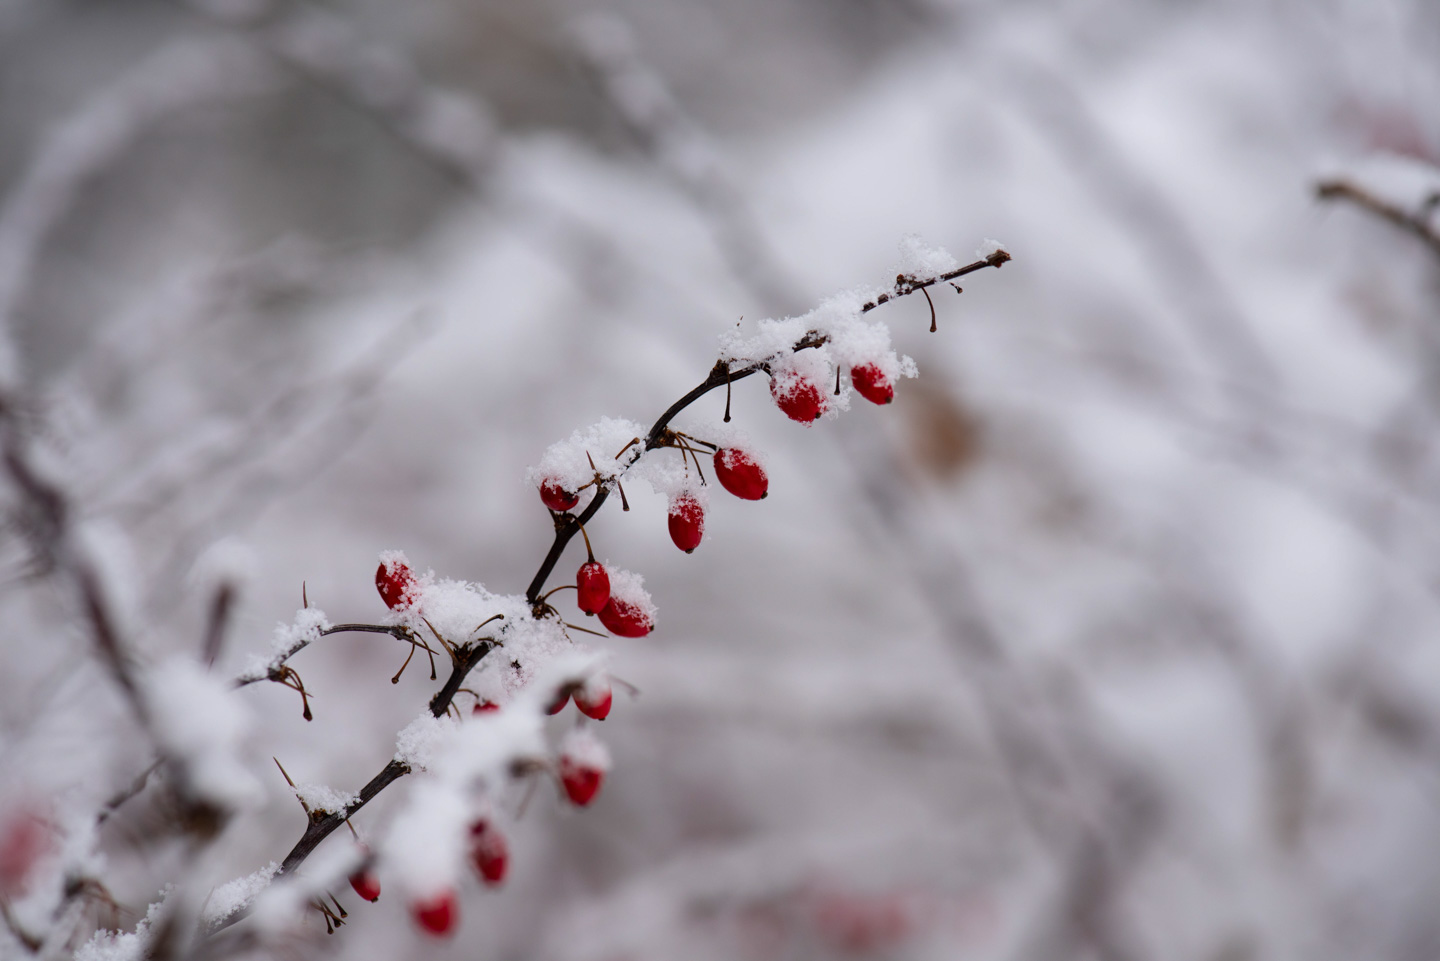 Berries in snow